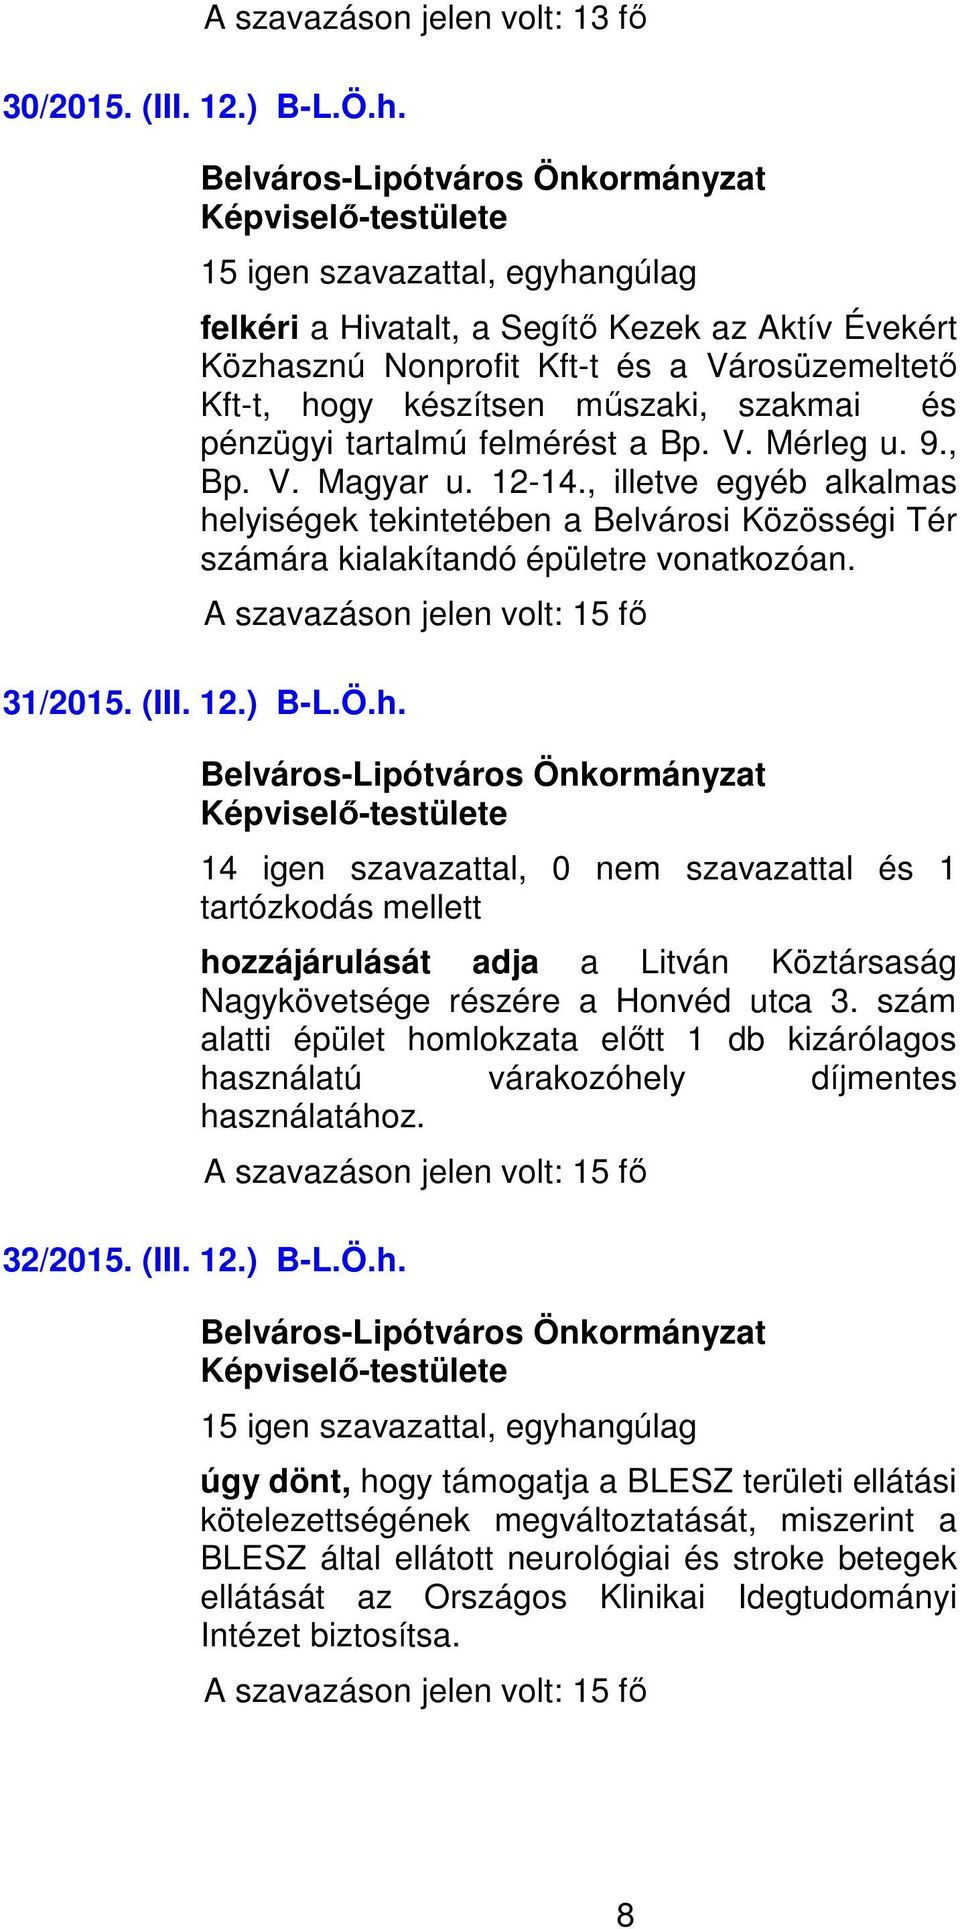 12-14., illetve egyéb alkalmas helyiségek tekintetében a Belvárosi Közösségi Tér számára kialakítandó épületre vonatkozóan. 31/2015. (III. 12.) B-L.Ö.h. 14 igen szavazattal, 0 nem szavazattal és 1 hozzájárulását adja a Litván Köztársaság Nagykövetsége részére a Honvéd utca 3.